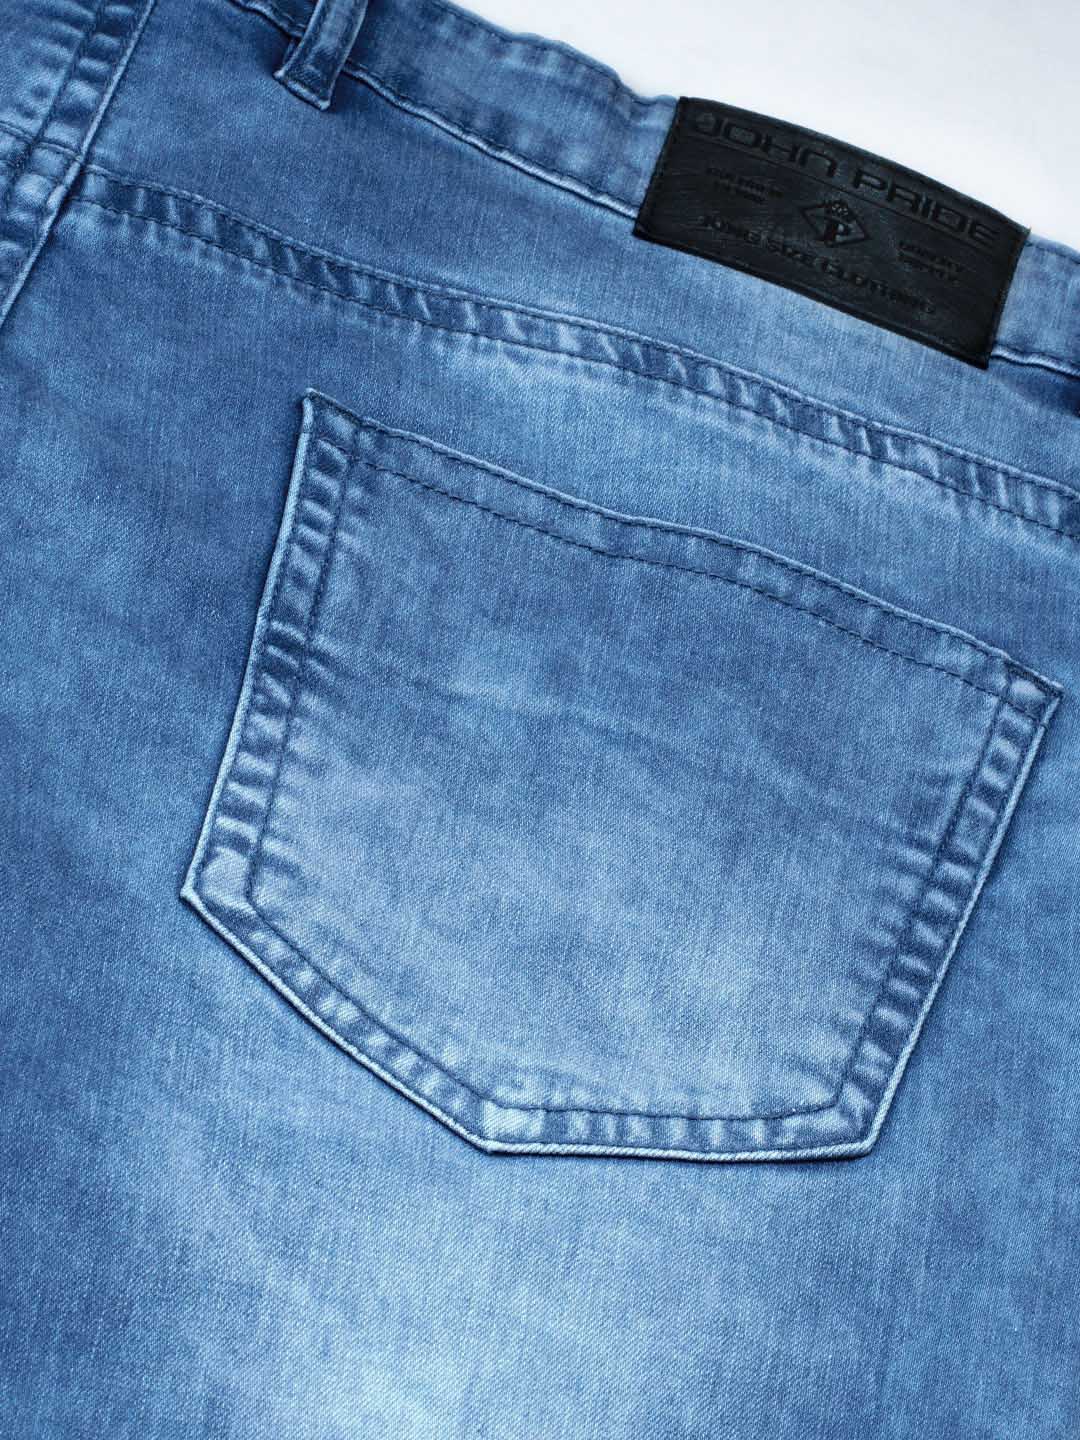 bottomwear/jeans/JPJ12116/jpj12116-5.jpg